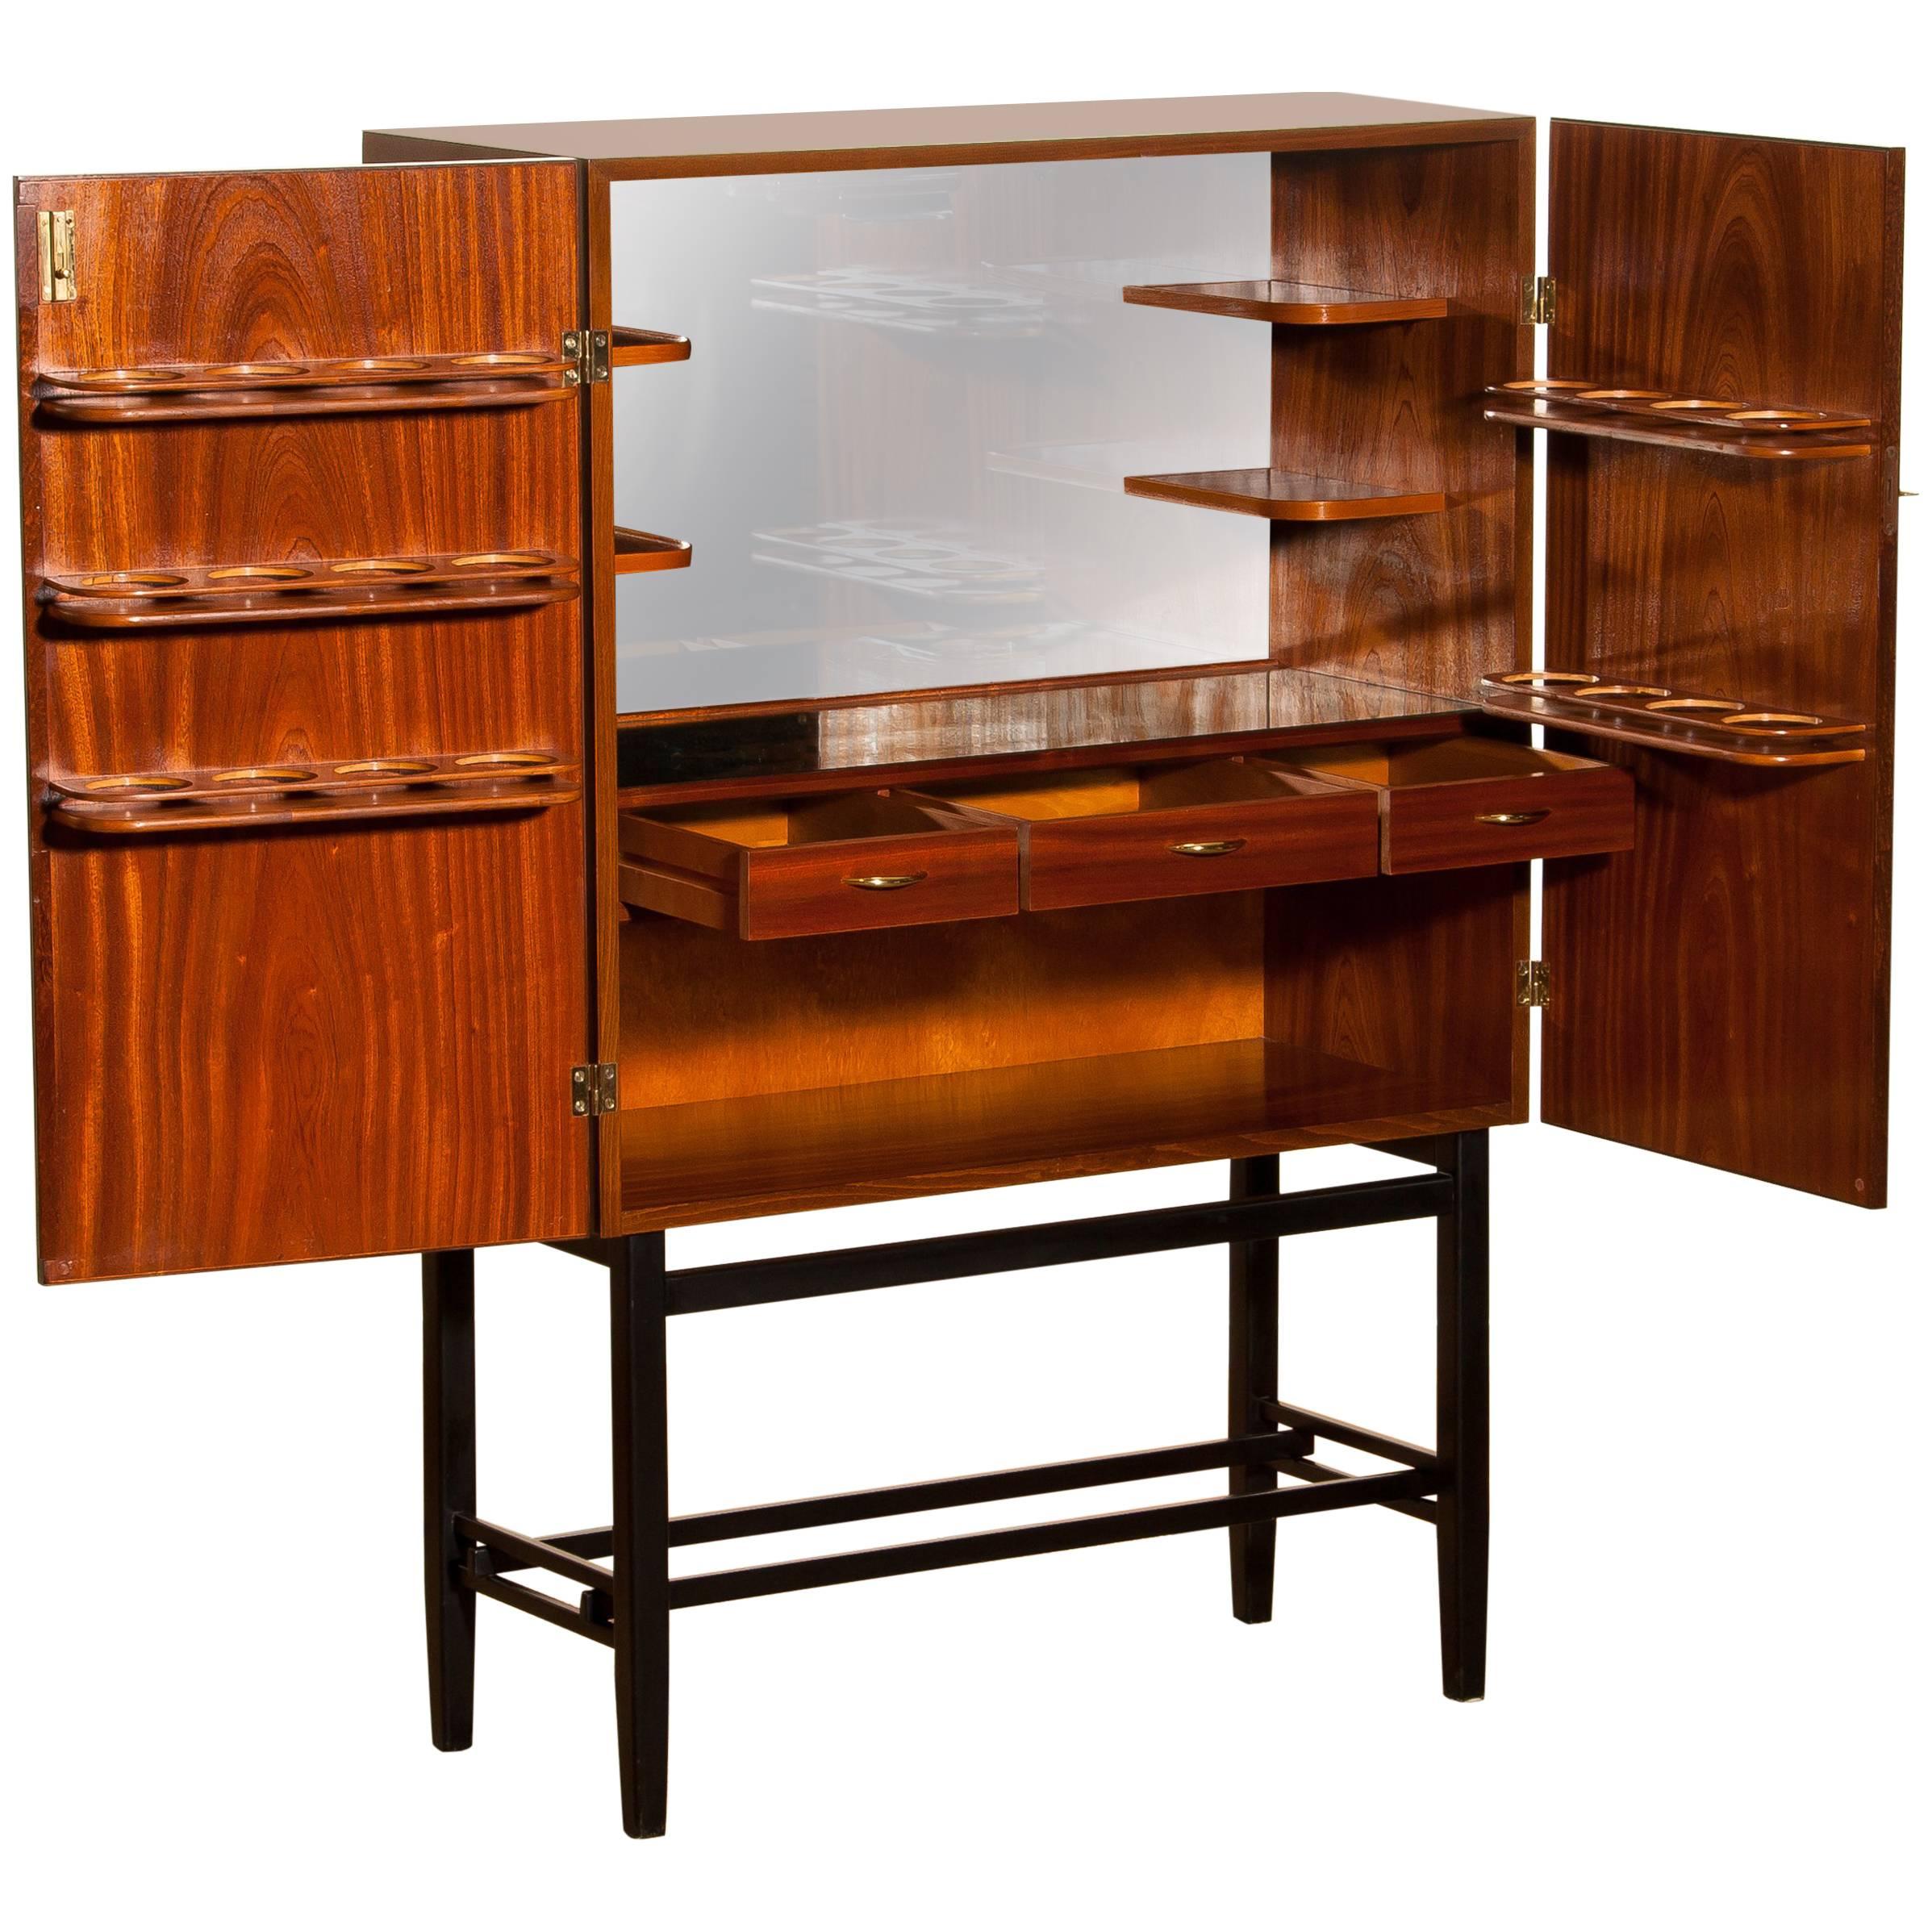 Mahogany Dry Bar Cabinet, Brass Details, High Black Skinny Legs Made by Förenade